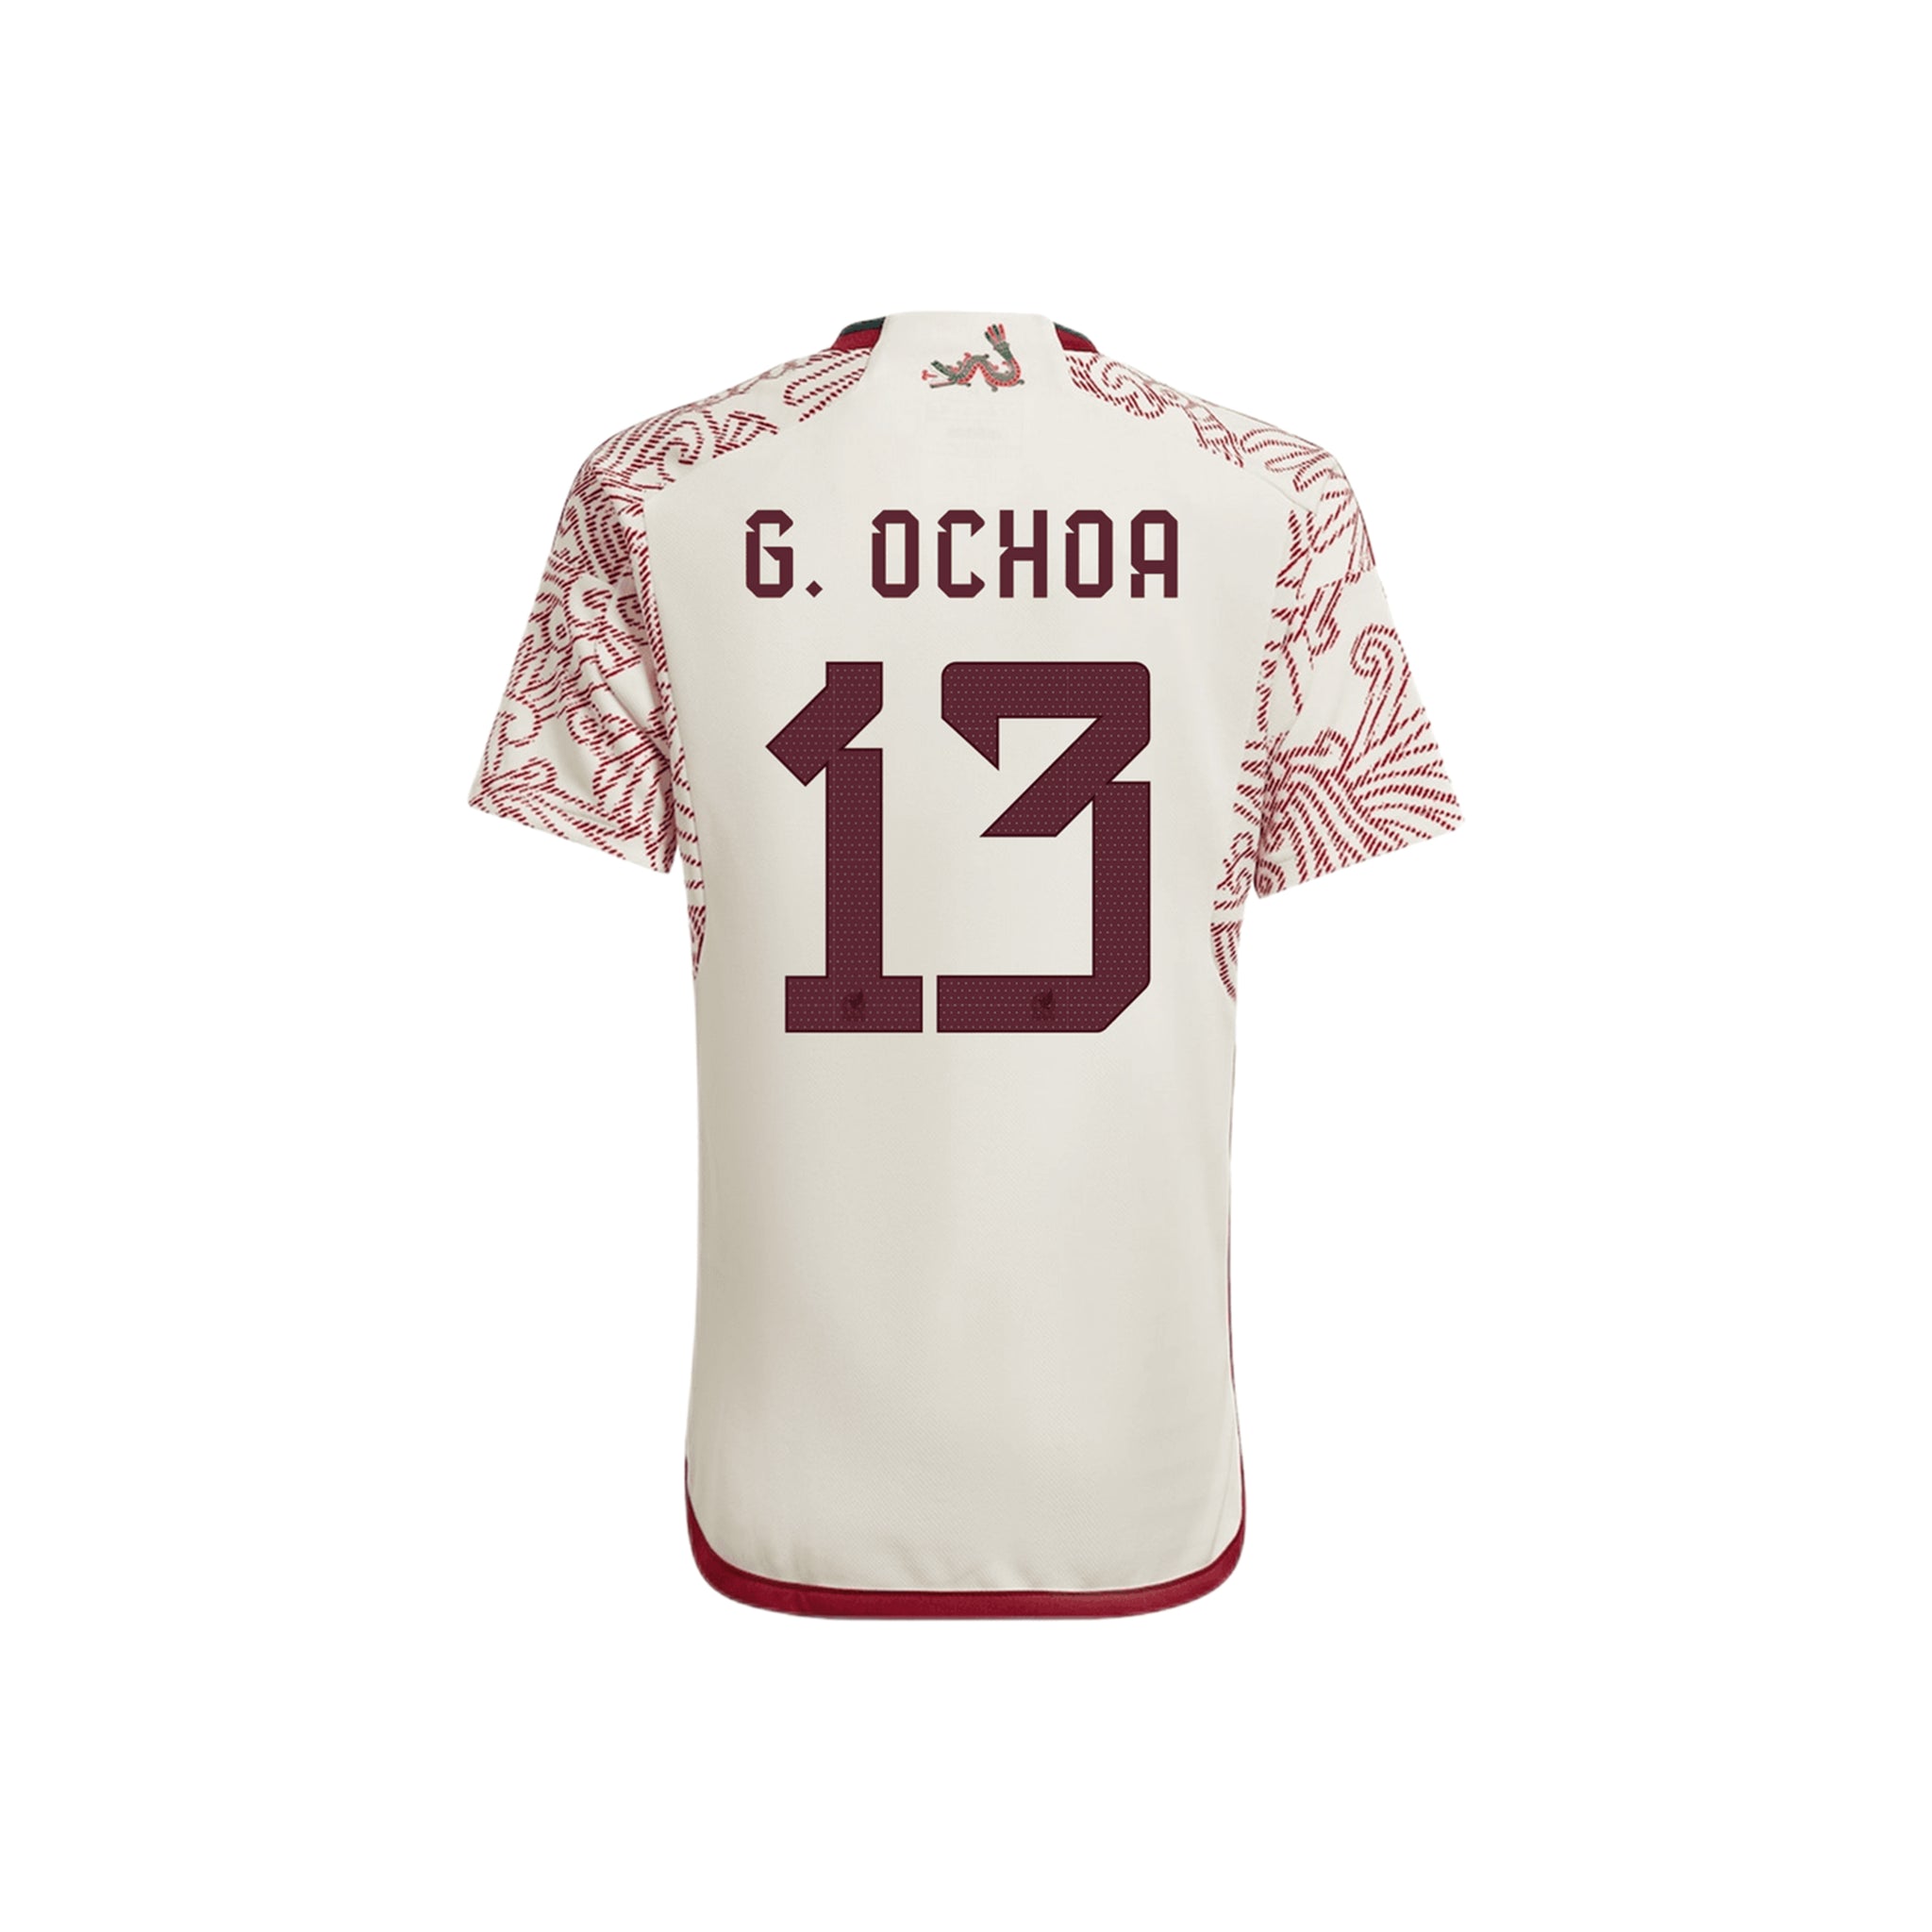 ADIDAS Mexico Away G. OCHOA 2022